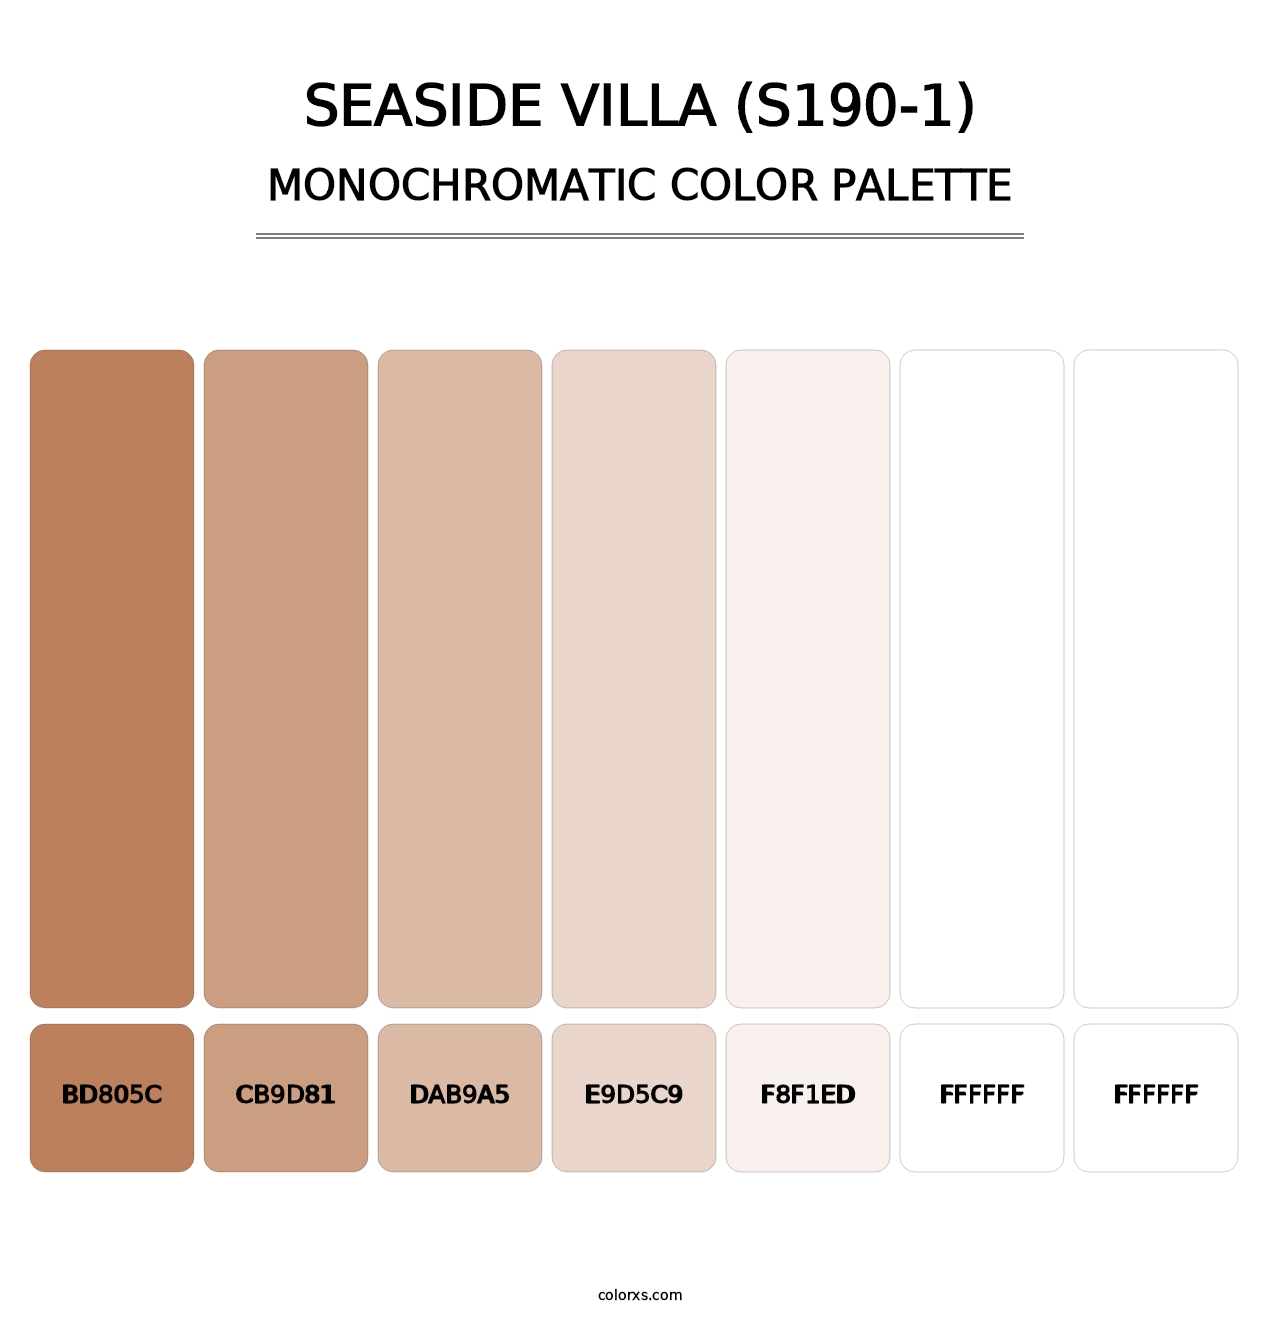 Seaside Villa (S190-1) - Monochromatic Color Palette